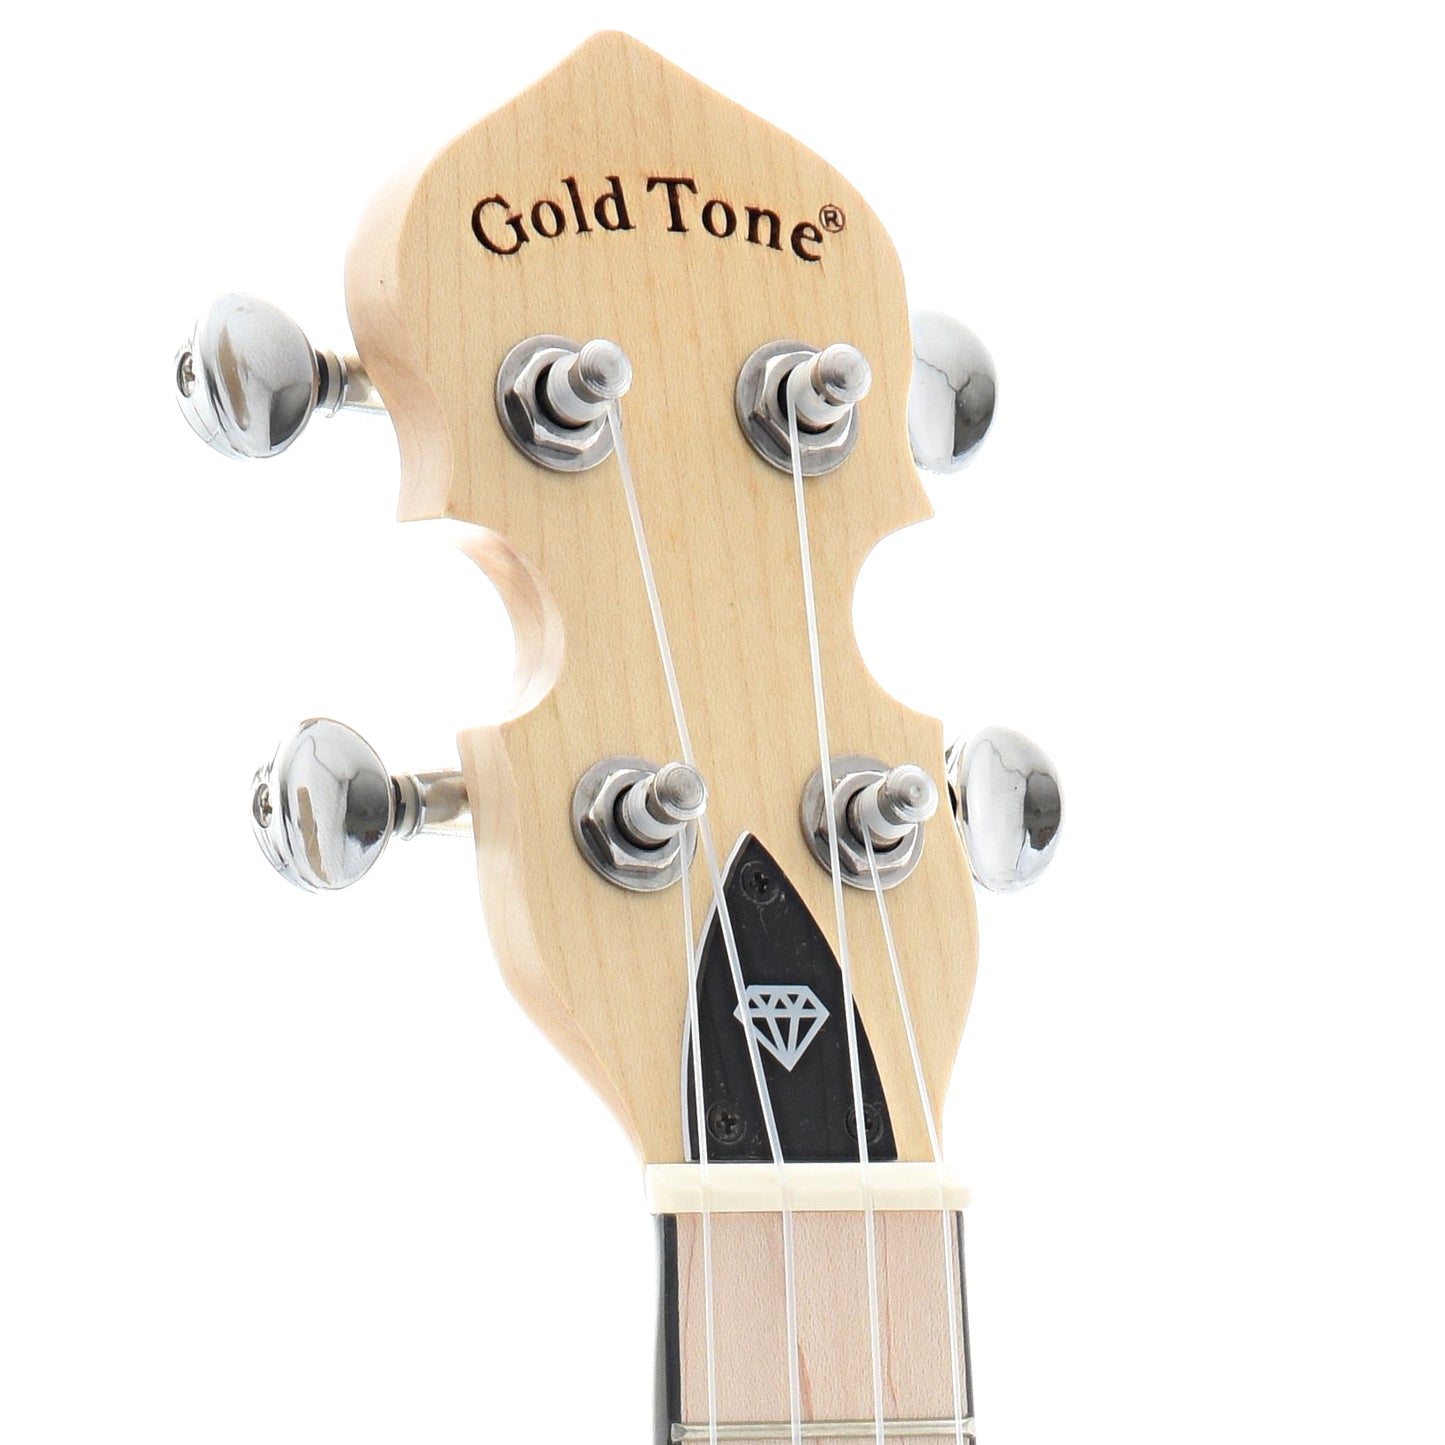 Image 6 of Gold Tone Little Gem Banjo Ukulele & Gigbag, Amethyst (purple) - SKU# LGEM-PUR : Product Type Banjo Ukuleles : Elderly Instruments